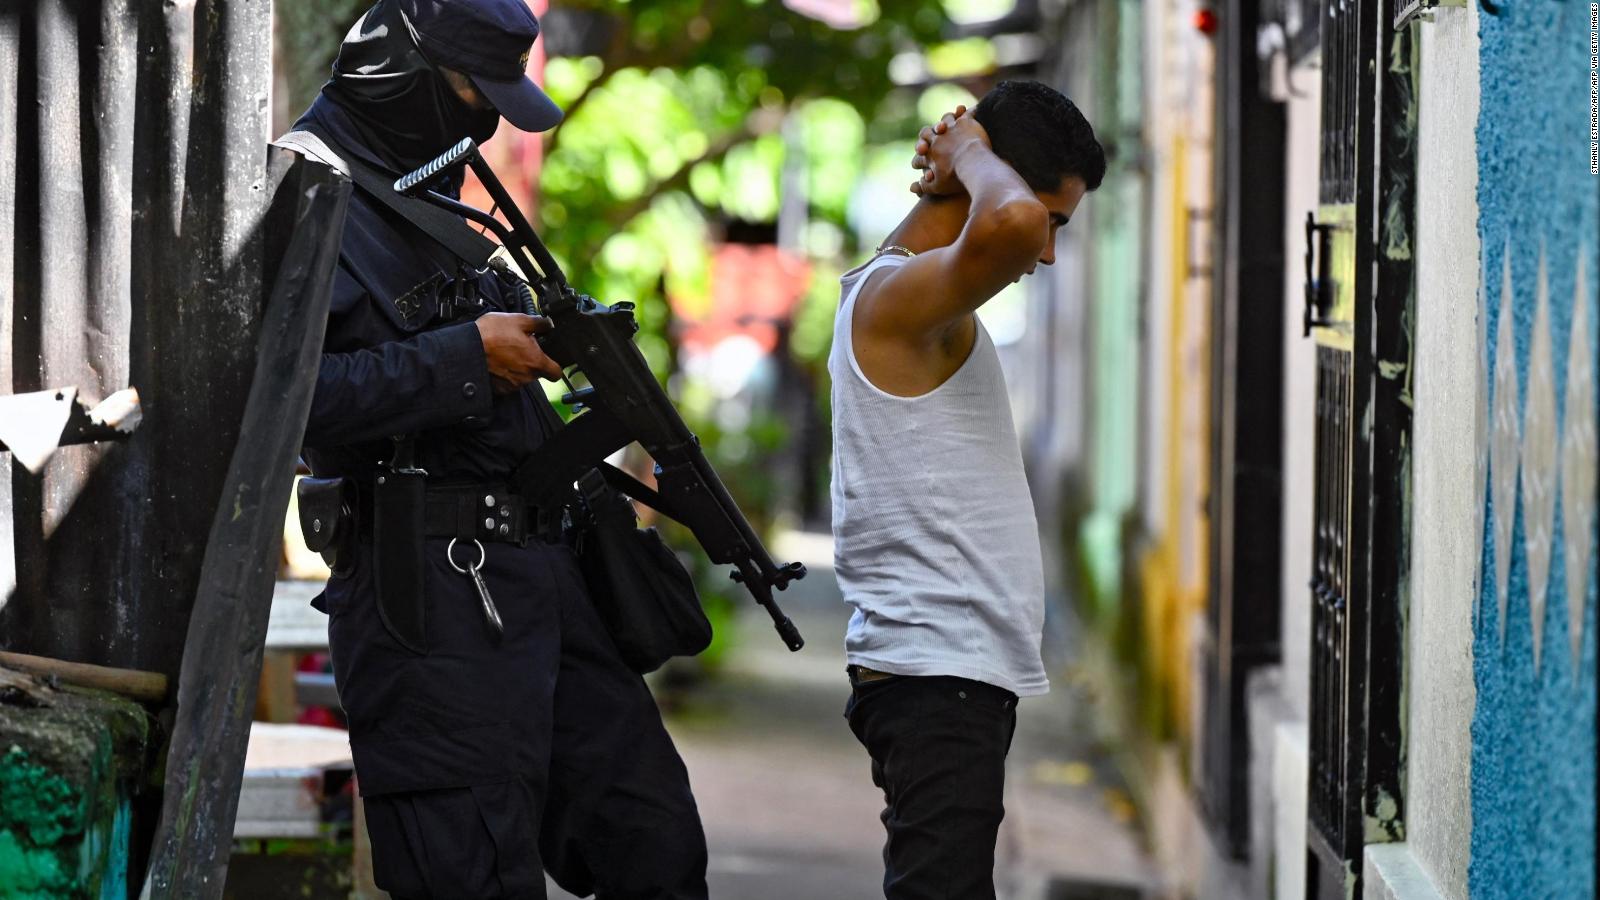 Violaciones de derechos humanos son el precio a pagar por sentirse seguro en El Salvador, dice activista |  Video